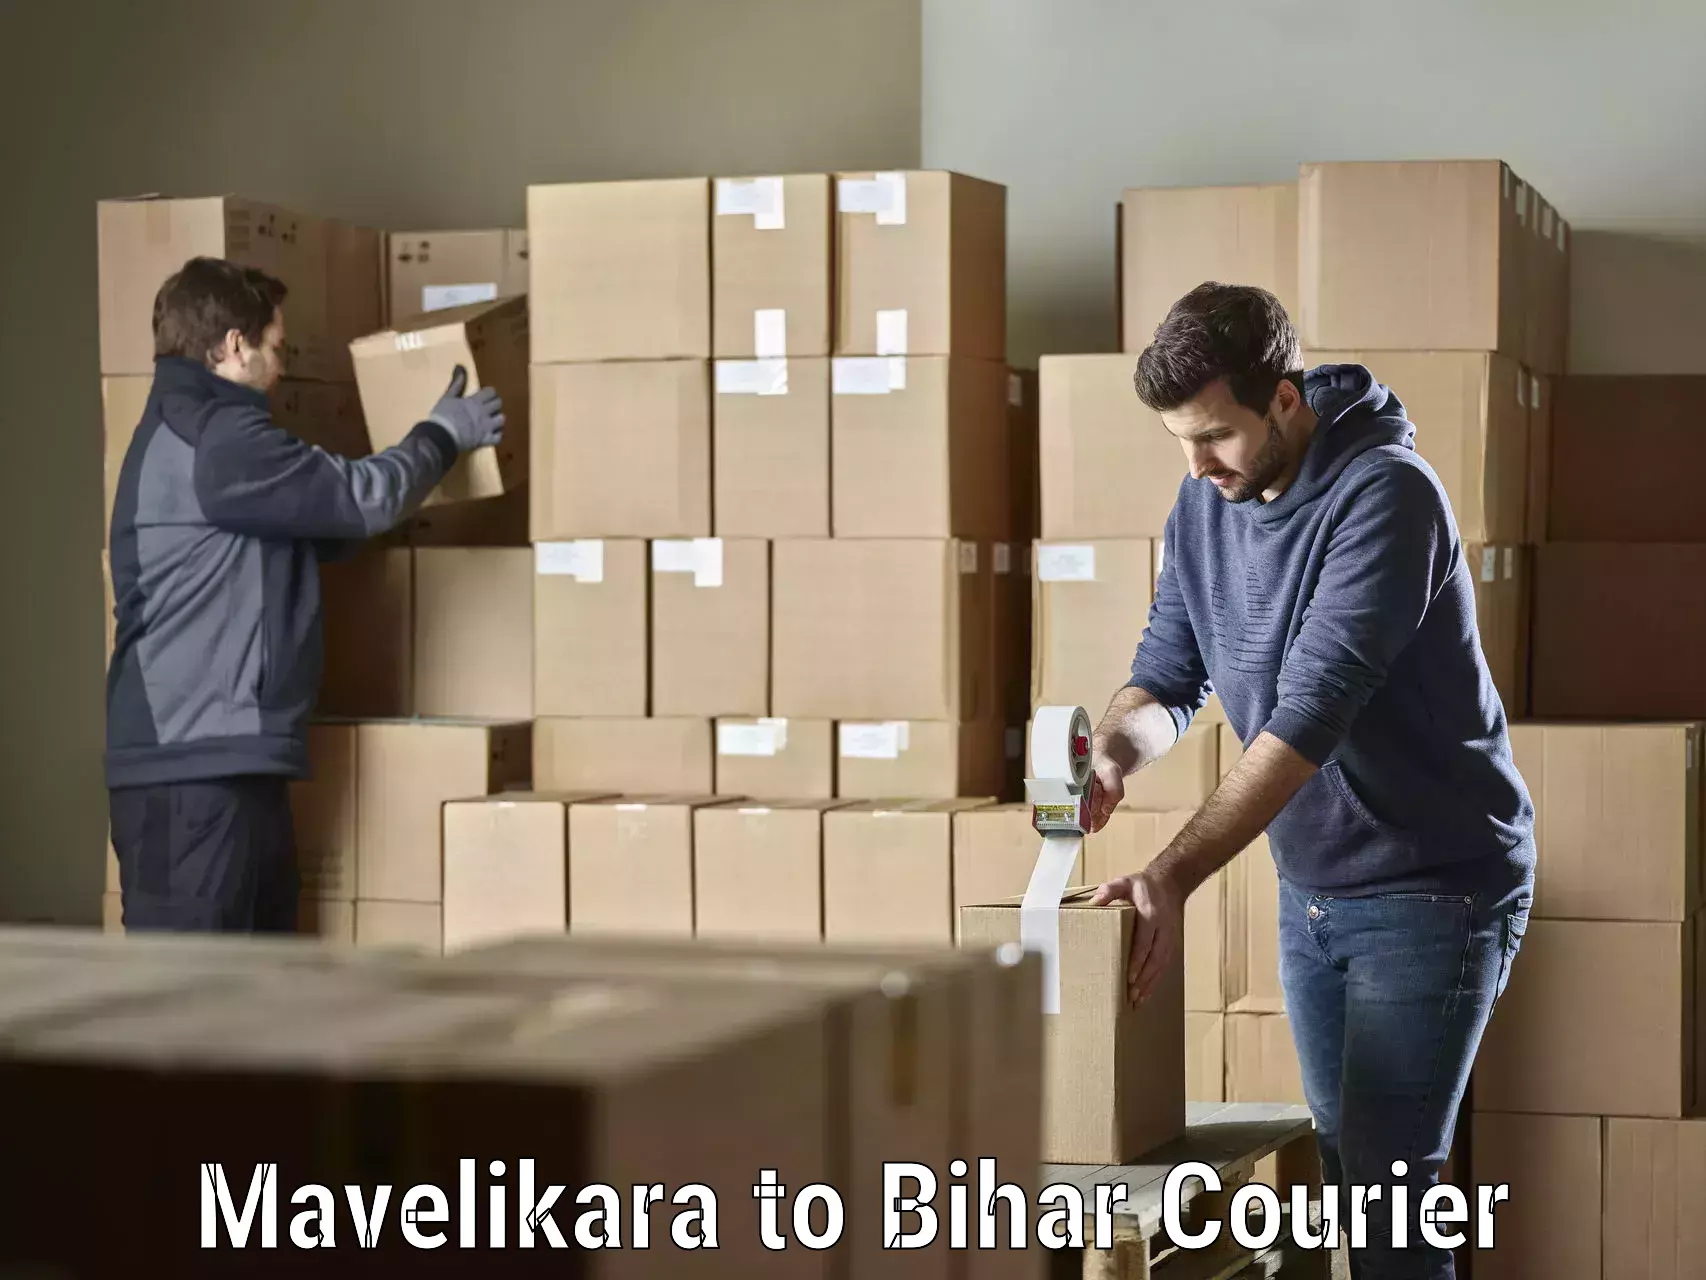 Cost-effective freight solutions Mavelikara to Bihar